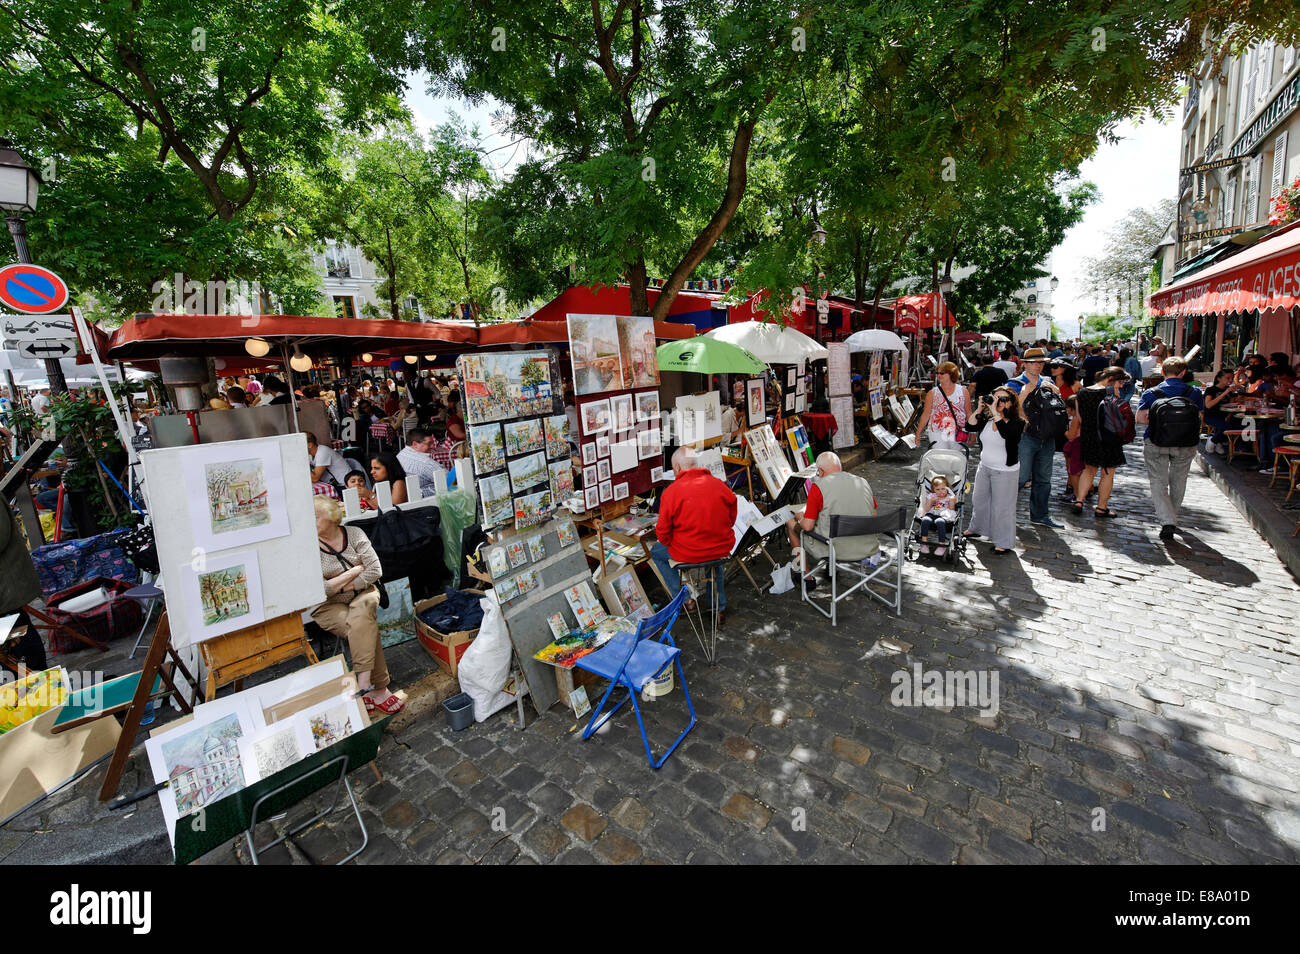 Painters at the Place du Tertre, Montmartre, 18th Arrondissement, Paris, France Stock Photo